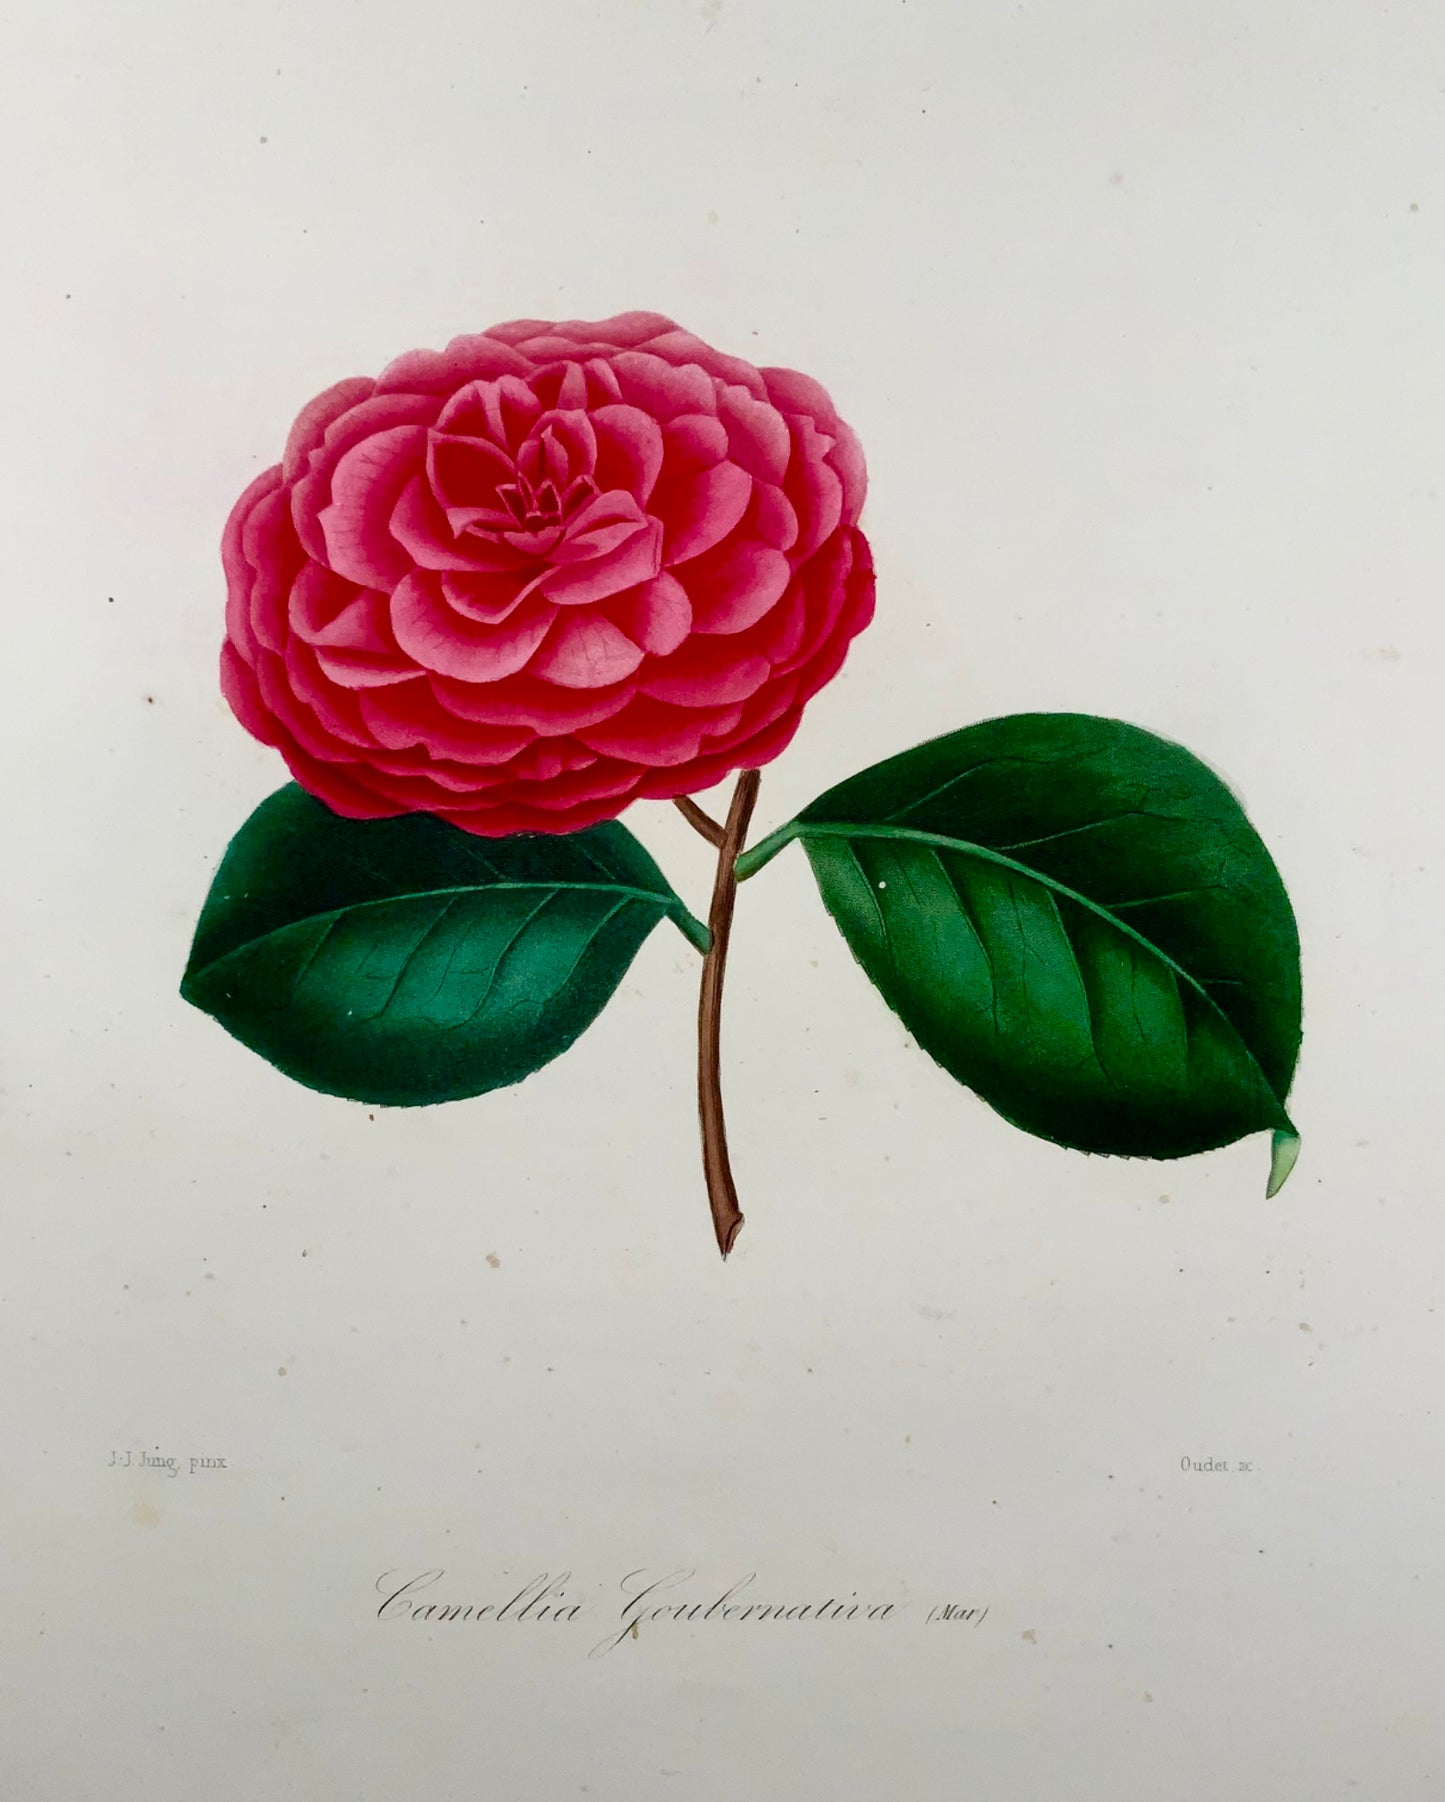 1841 Camellia Goubernativa, dessinée par JJ Jung, gravée par Oudet, Berlèse, botanique